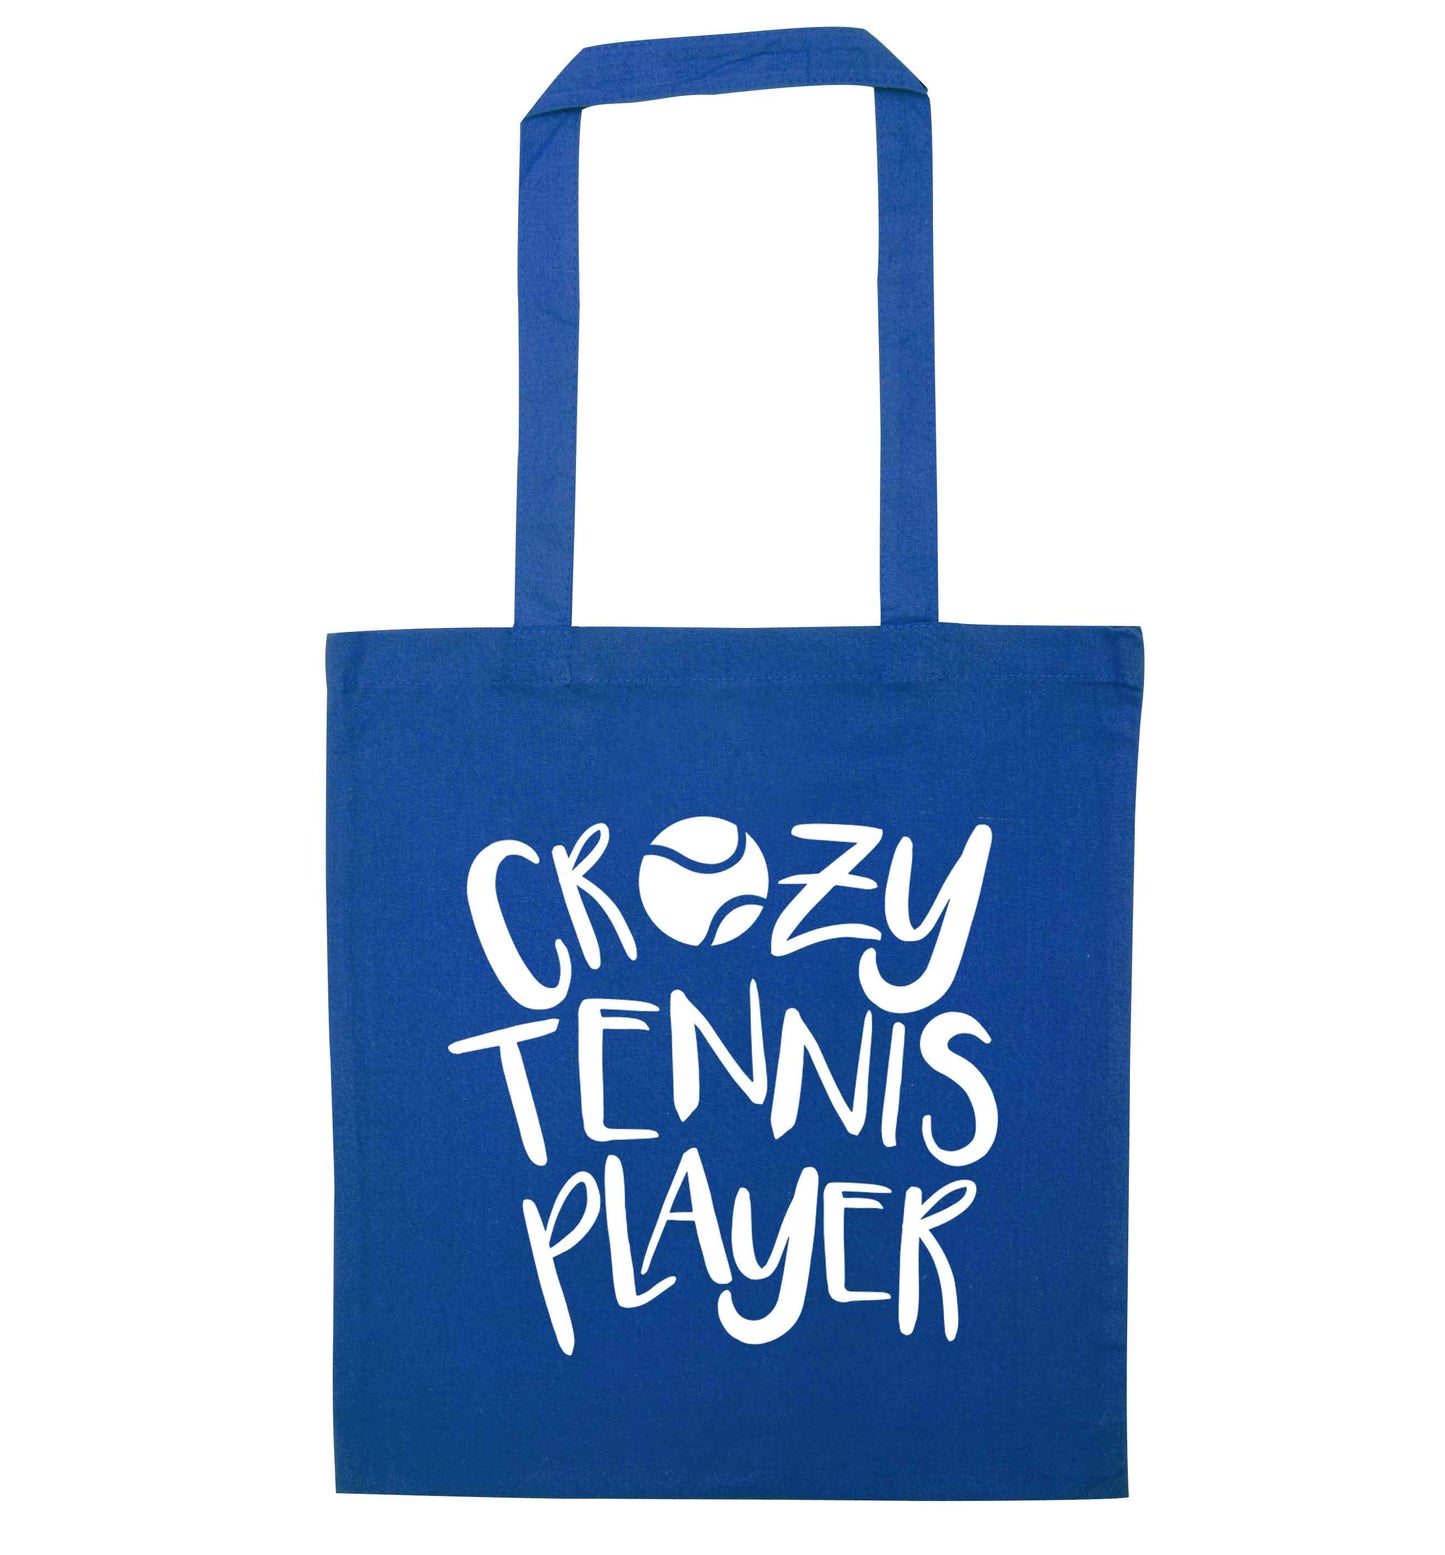 Crazy tennis player blue tote bag